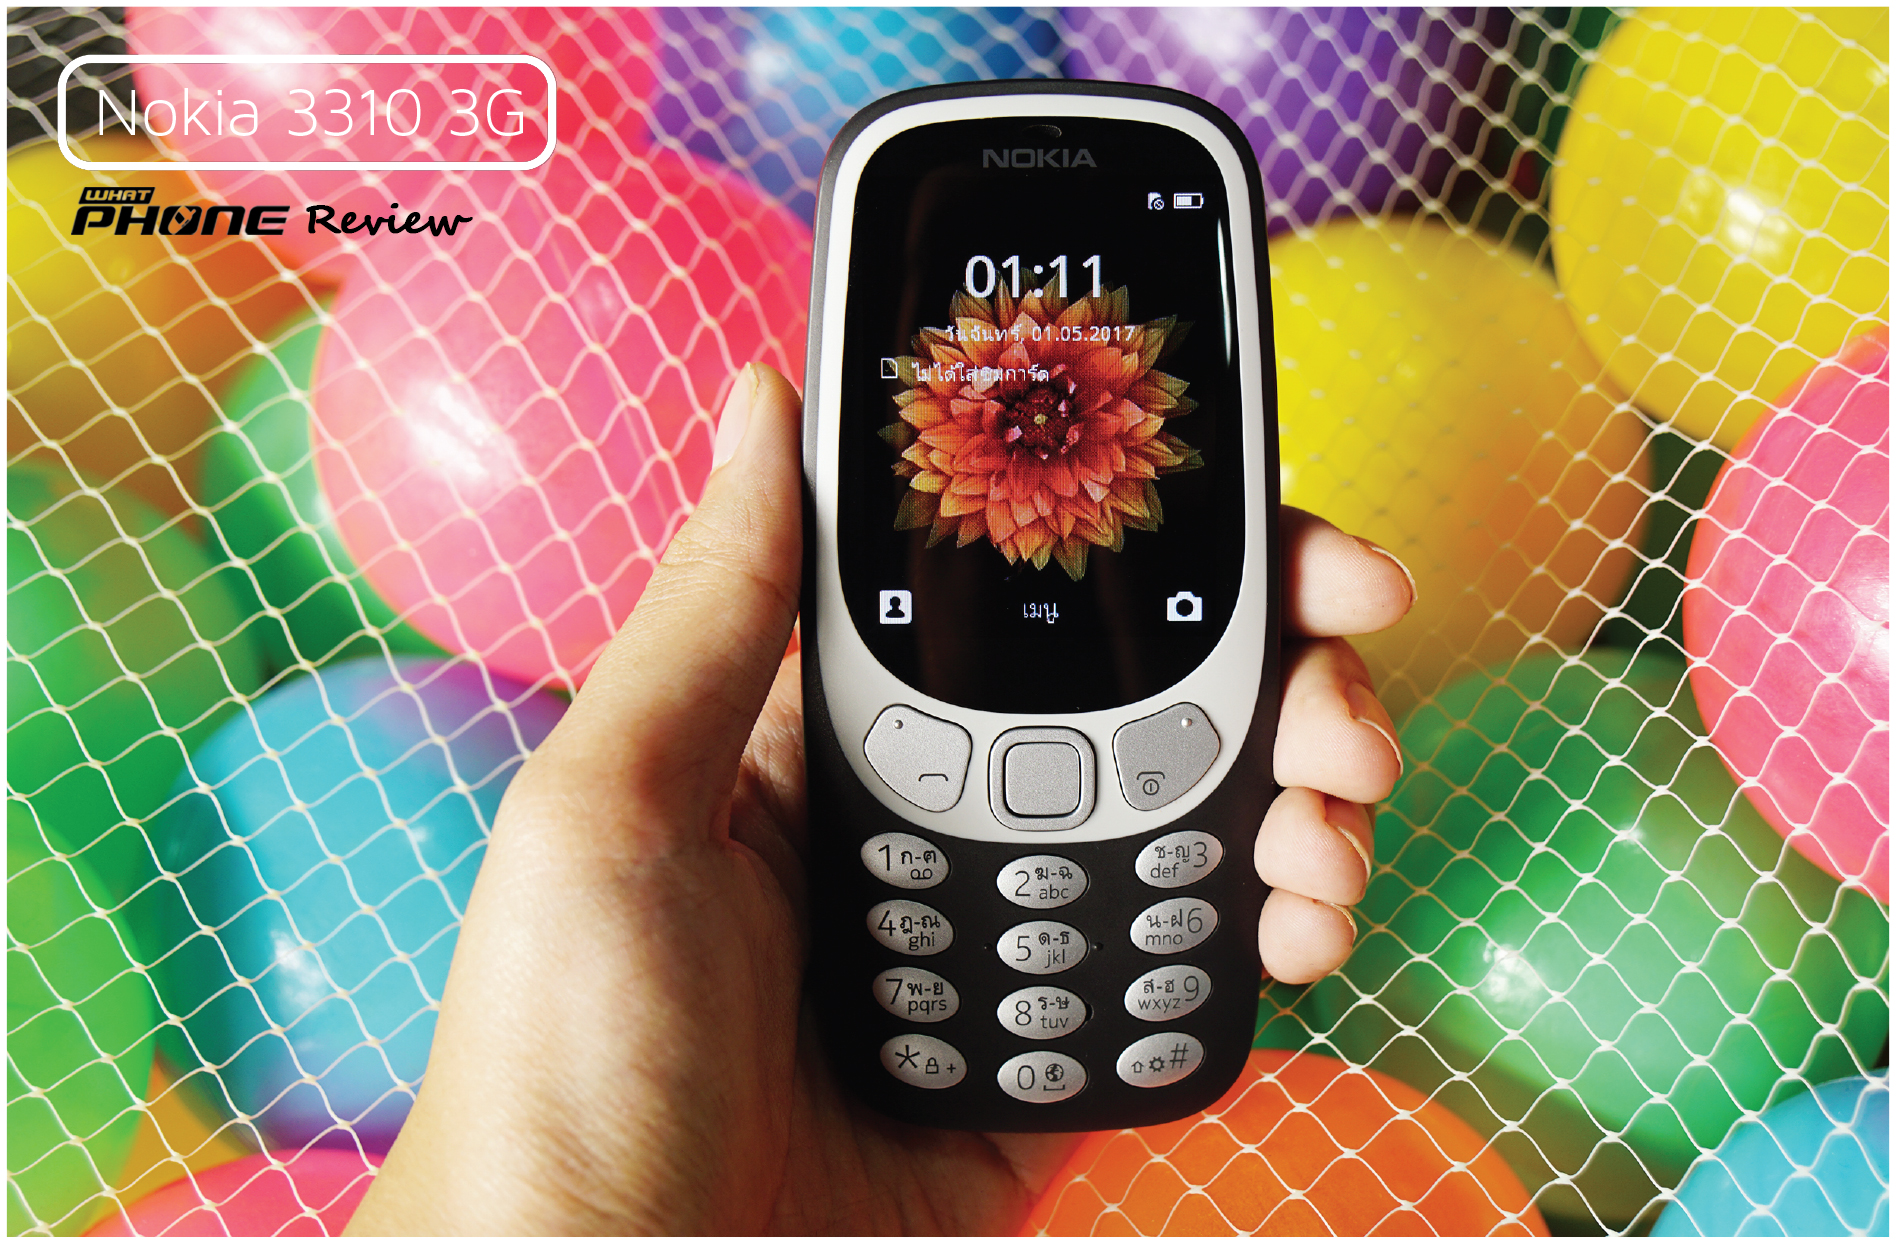 review Nokia 3310 3G